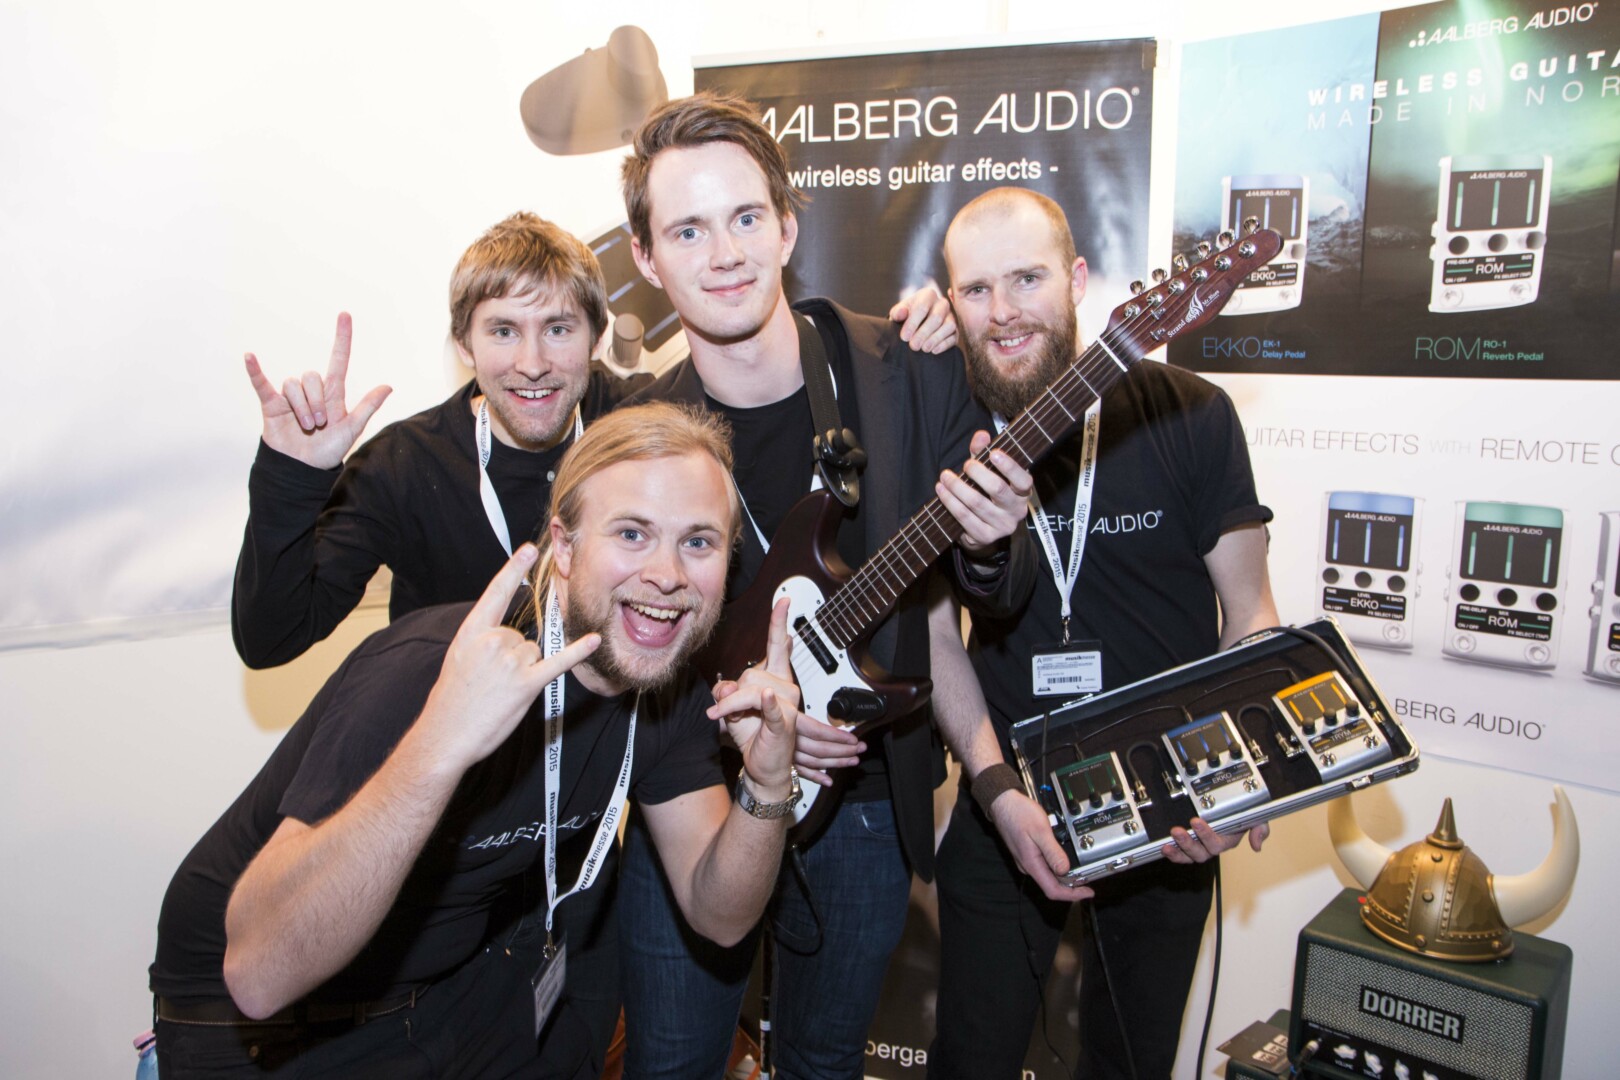 LYKKENS PAMFILIAE: Aalberg Audio, her på årets Frankfurt-messe, er optimister med tanke på sitt produkts framtid. Fra venstre: Aleksander Torstensen, Martin Kristoffersen, Rolf Rikard Bjørkvoll og Rune Aalberg Aalstad.